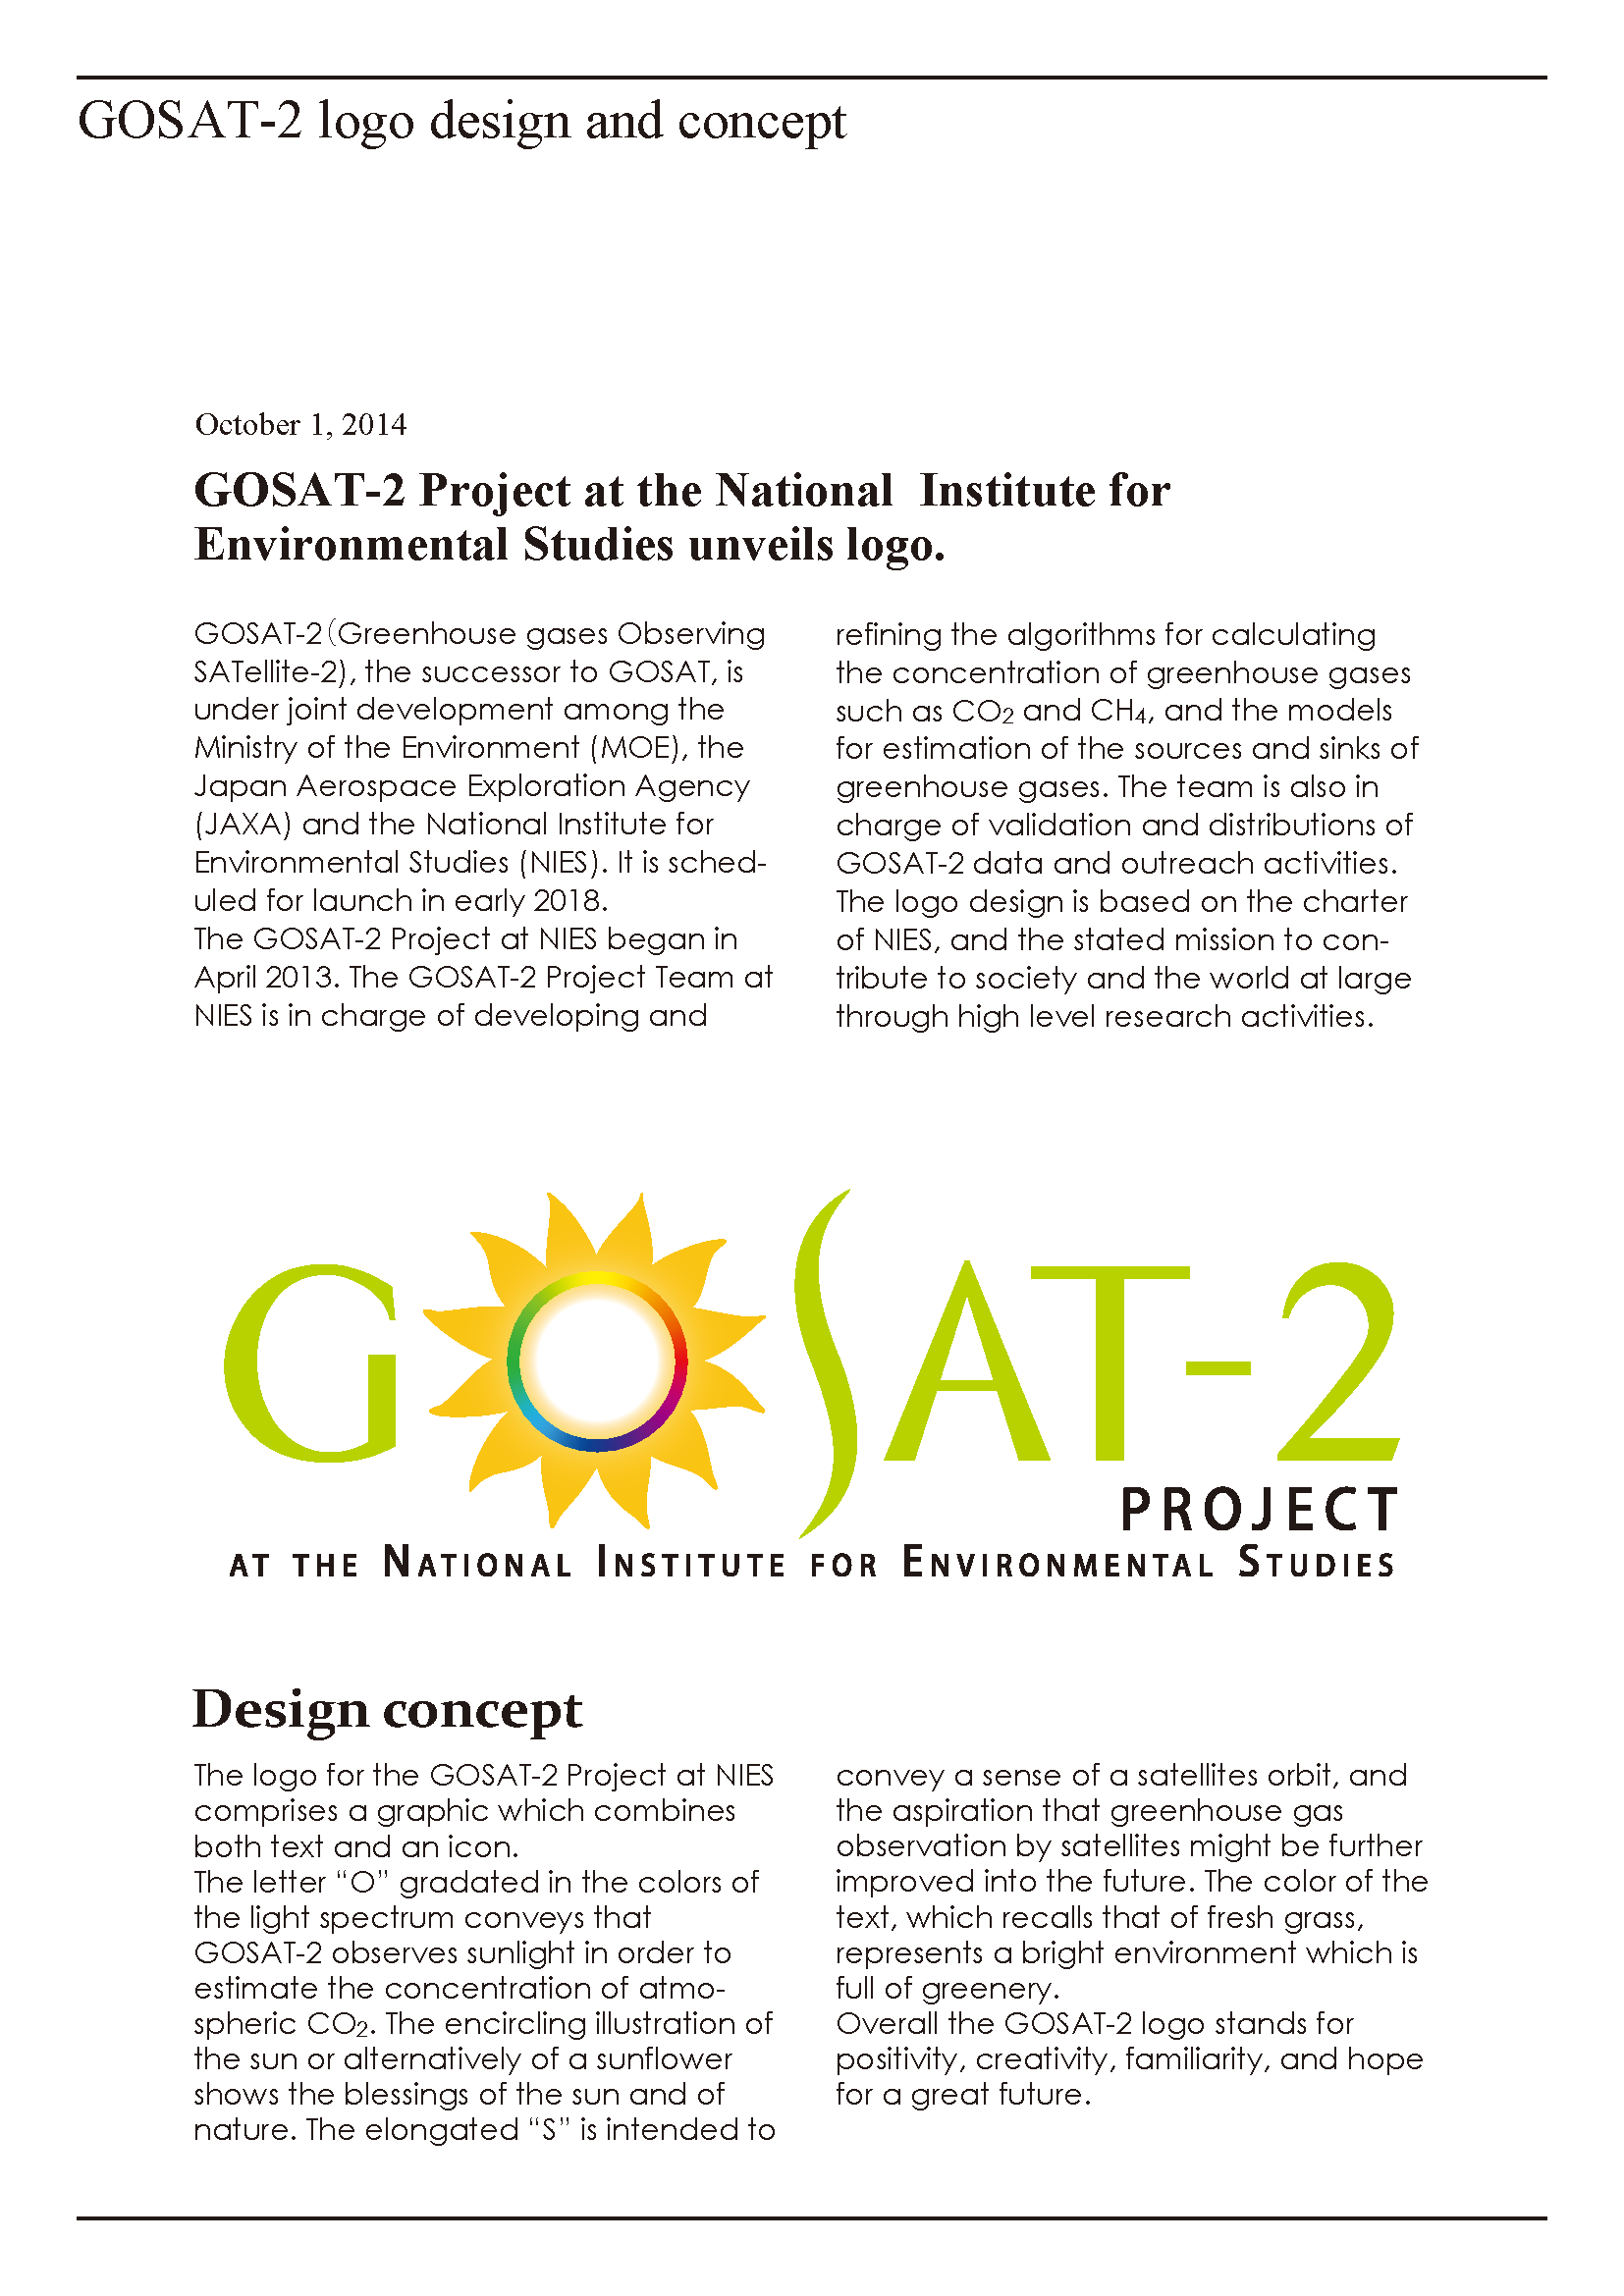 GOSAT-2 Logo Concept